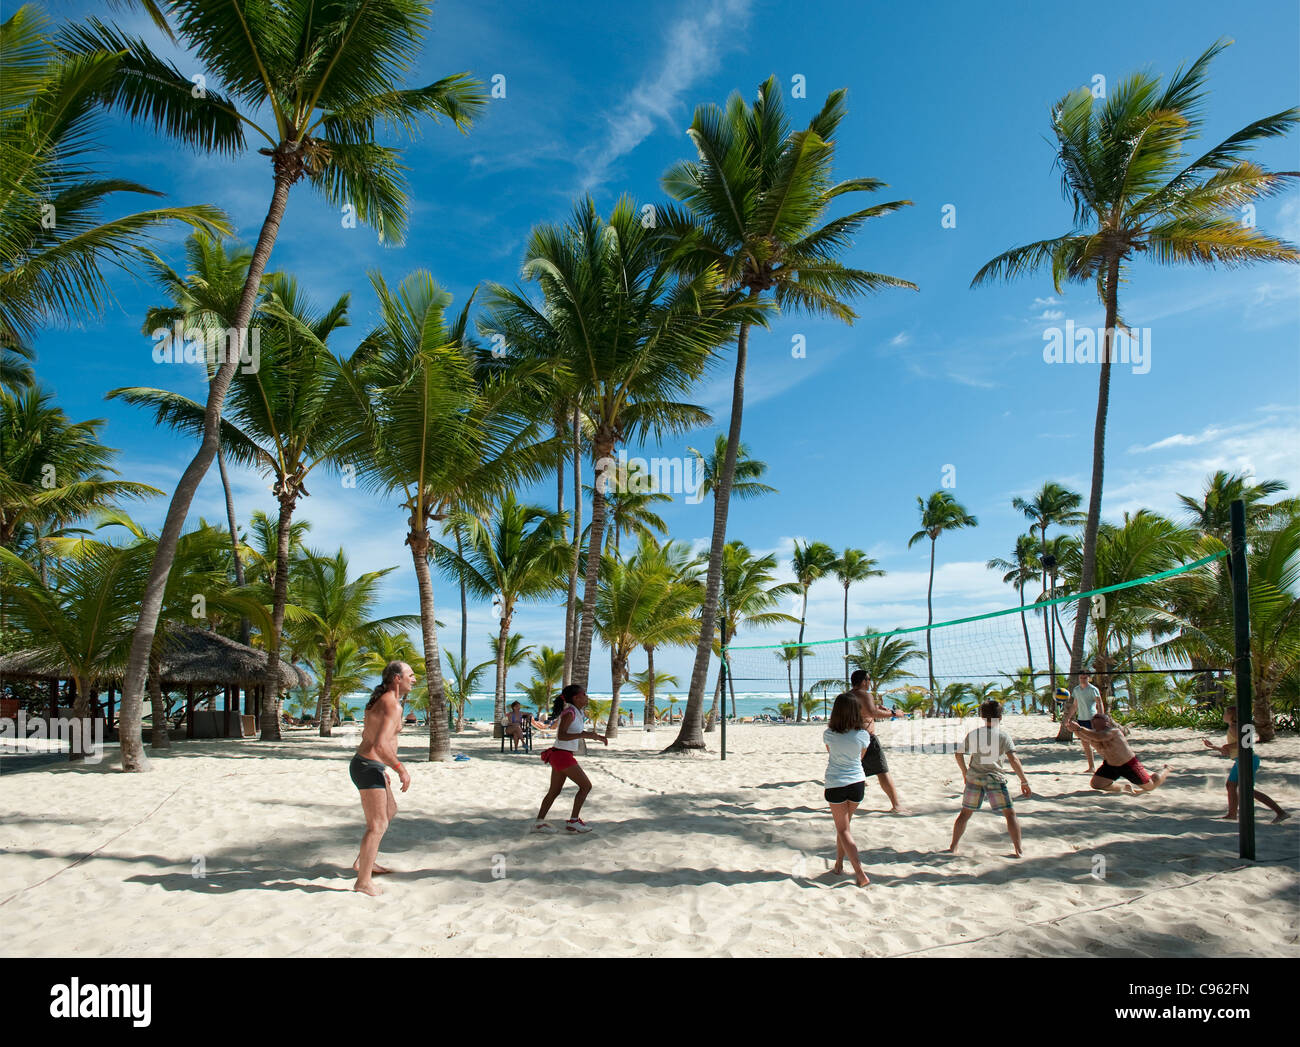 El voleibol en playa Bávaro en el Riu Bambu Hotel, Punta Cana, República Dominicana Foto de stock